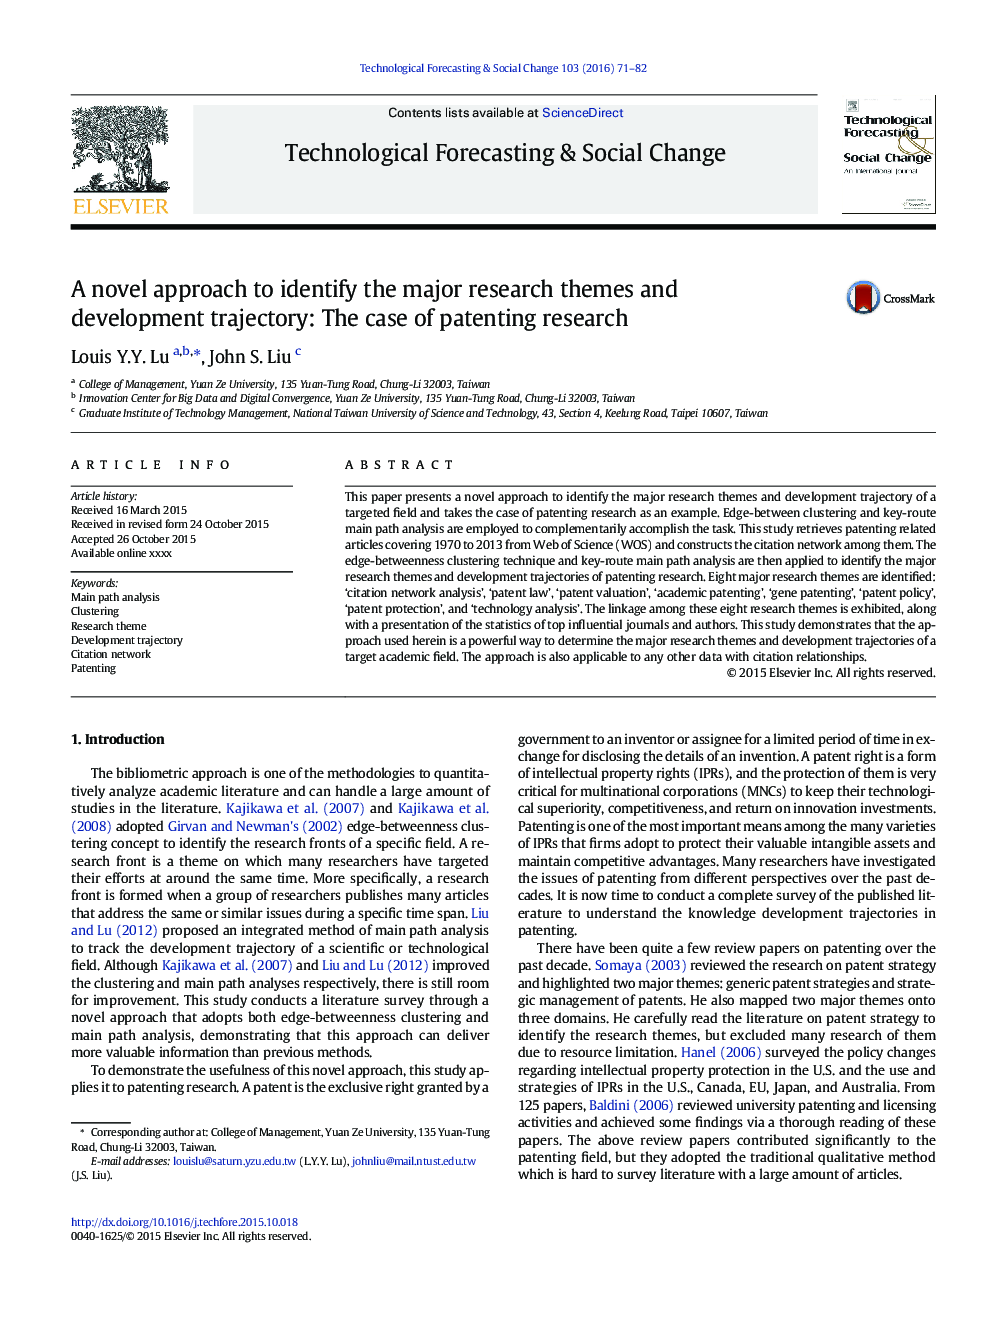 یک رویکرد جدید برای شناسایی موضوعات مهم تحقیق و مسیر توسعه: مورد تحقیق ثبت اختراع 